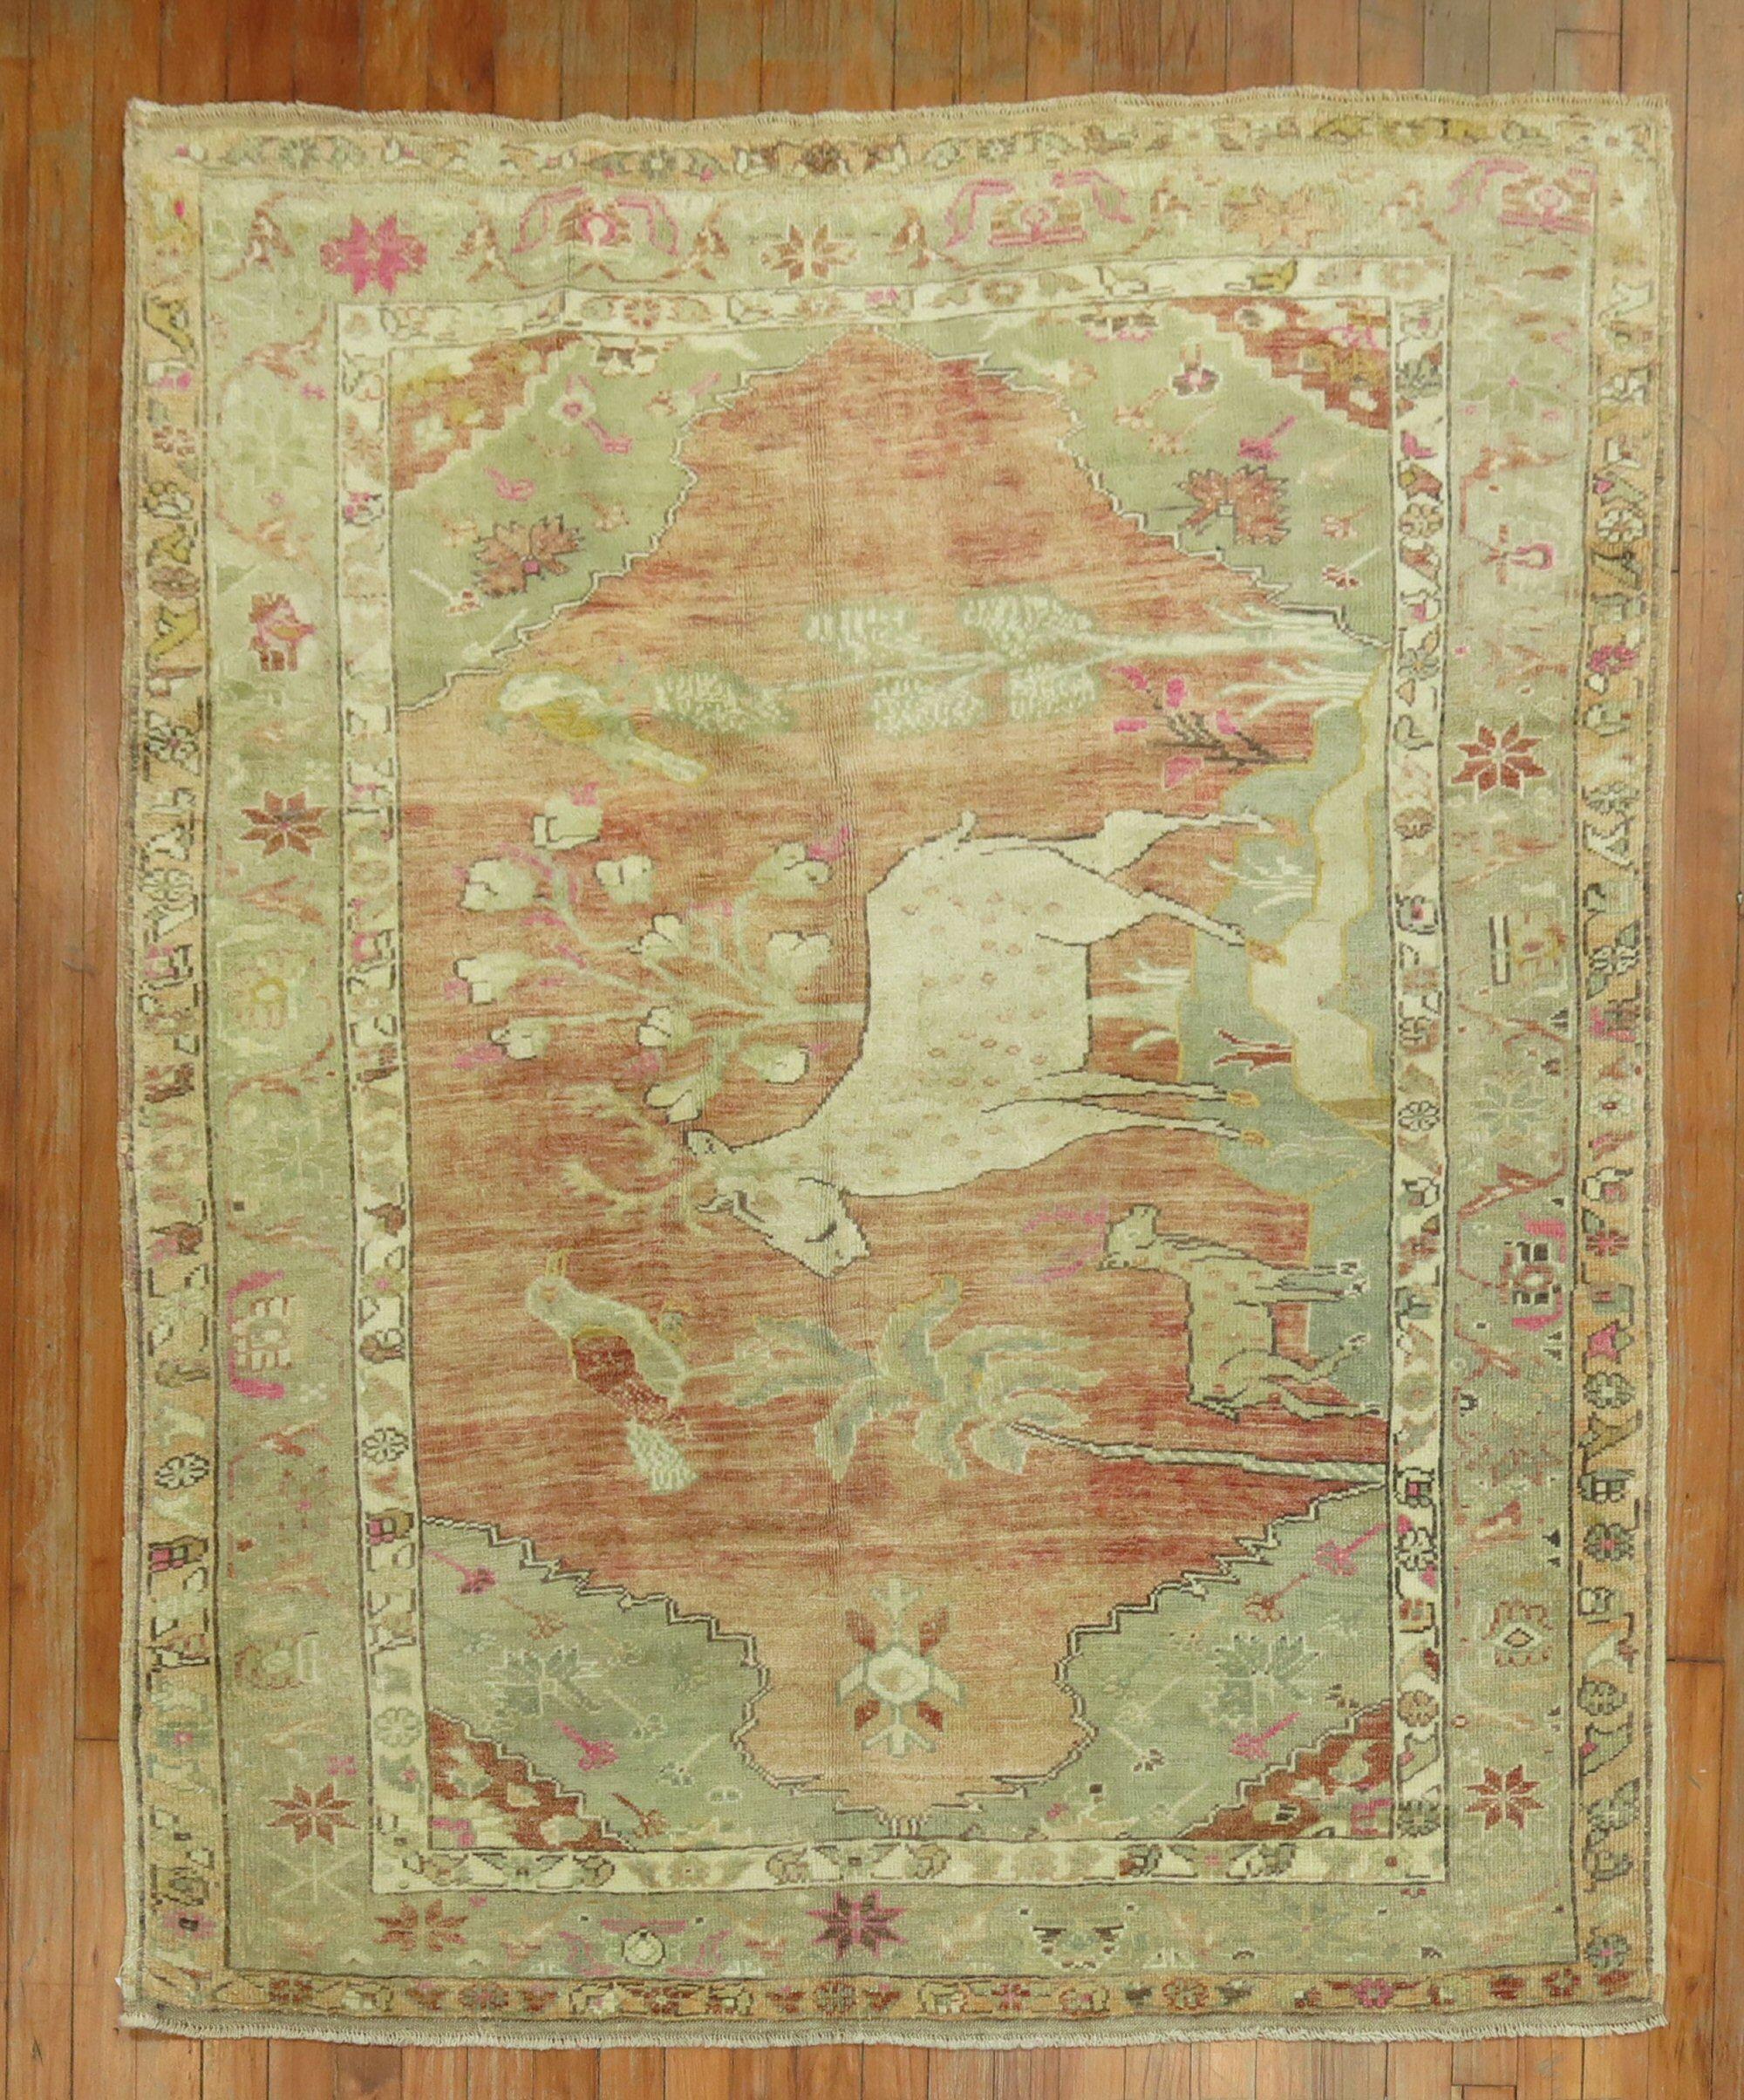 Einzigartiger handgeknüpfter türkisch-anatolischer Teppich in blassem Pfirsich, braunen und grünen Akzenten, der einen großen Hirsch, eine kleine Ziege und ein paar Vögel zeigt

Maße: 4'6